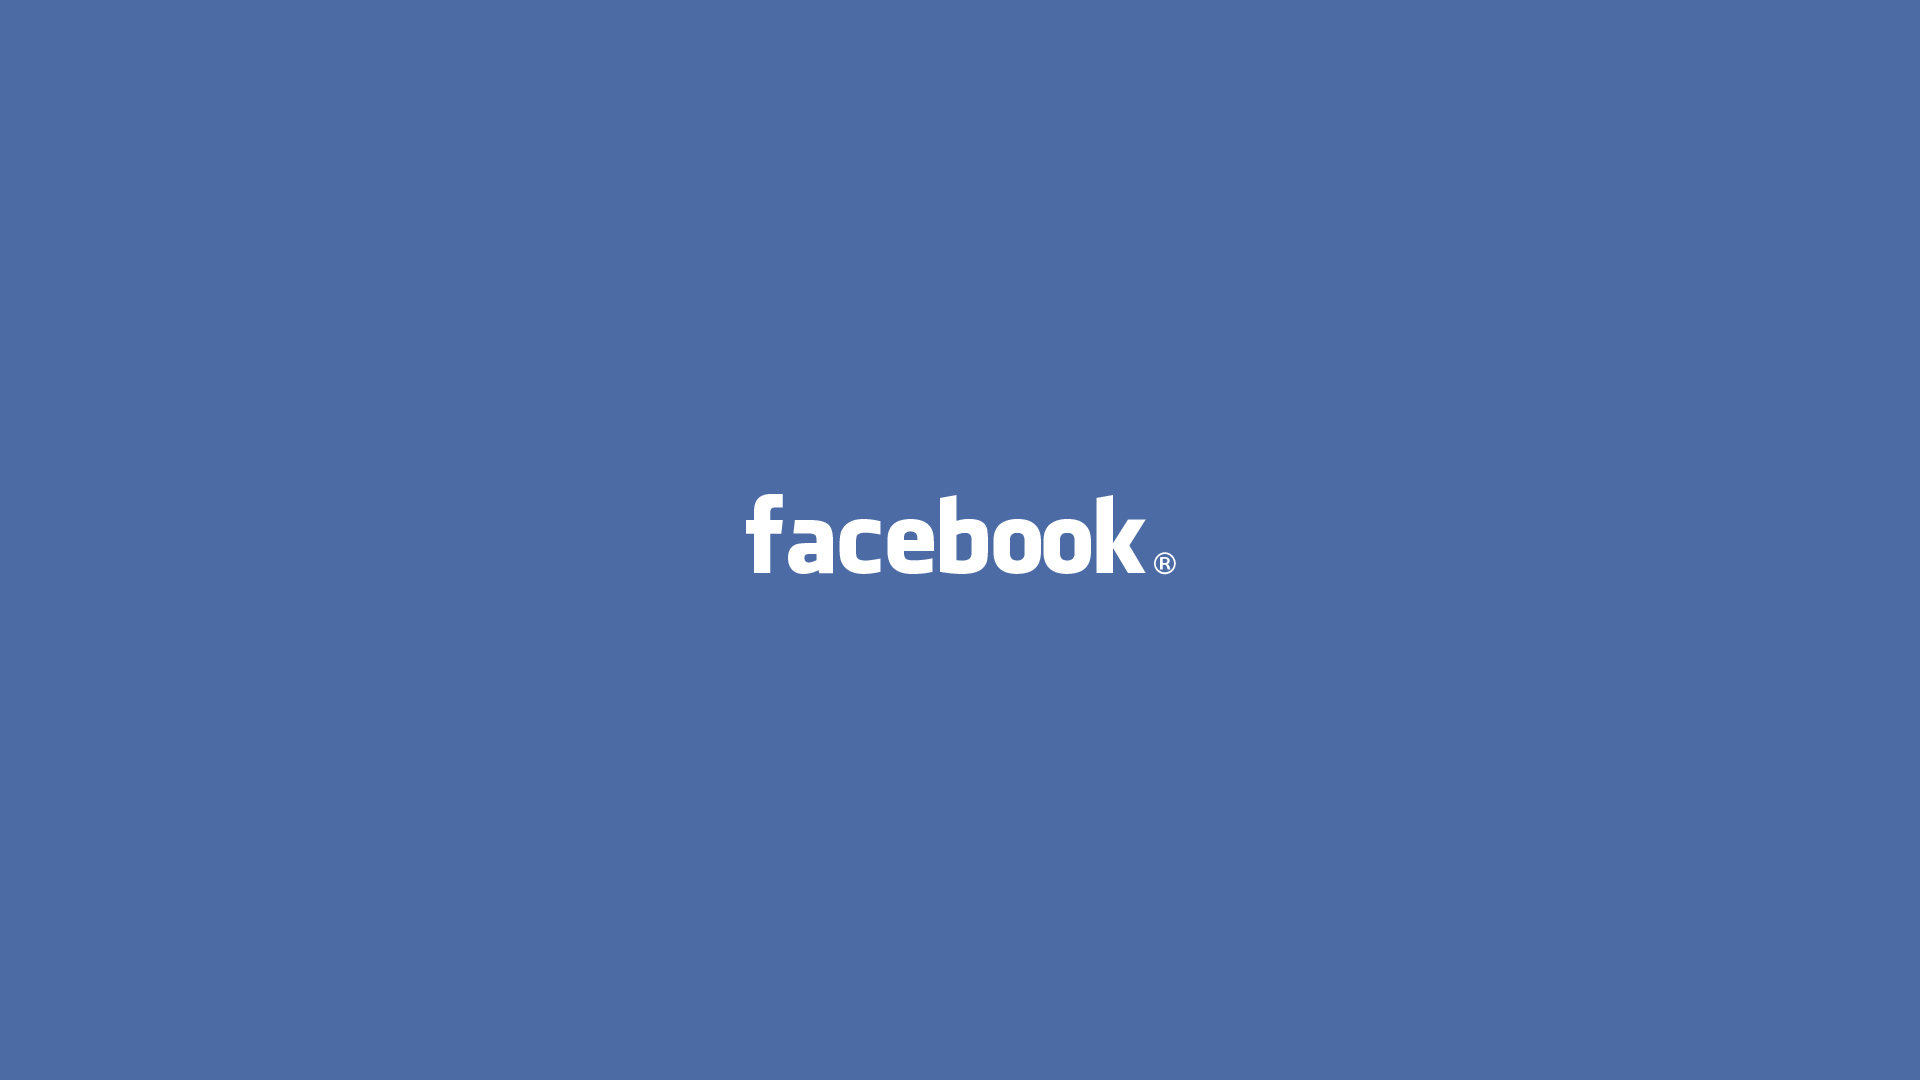 facebook fondos de pantalla hd,azul,cielo,texto,tiempo de día,fuente